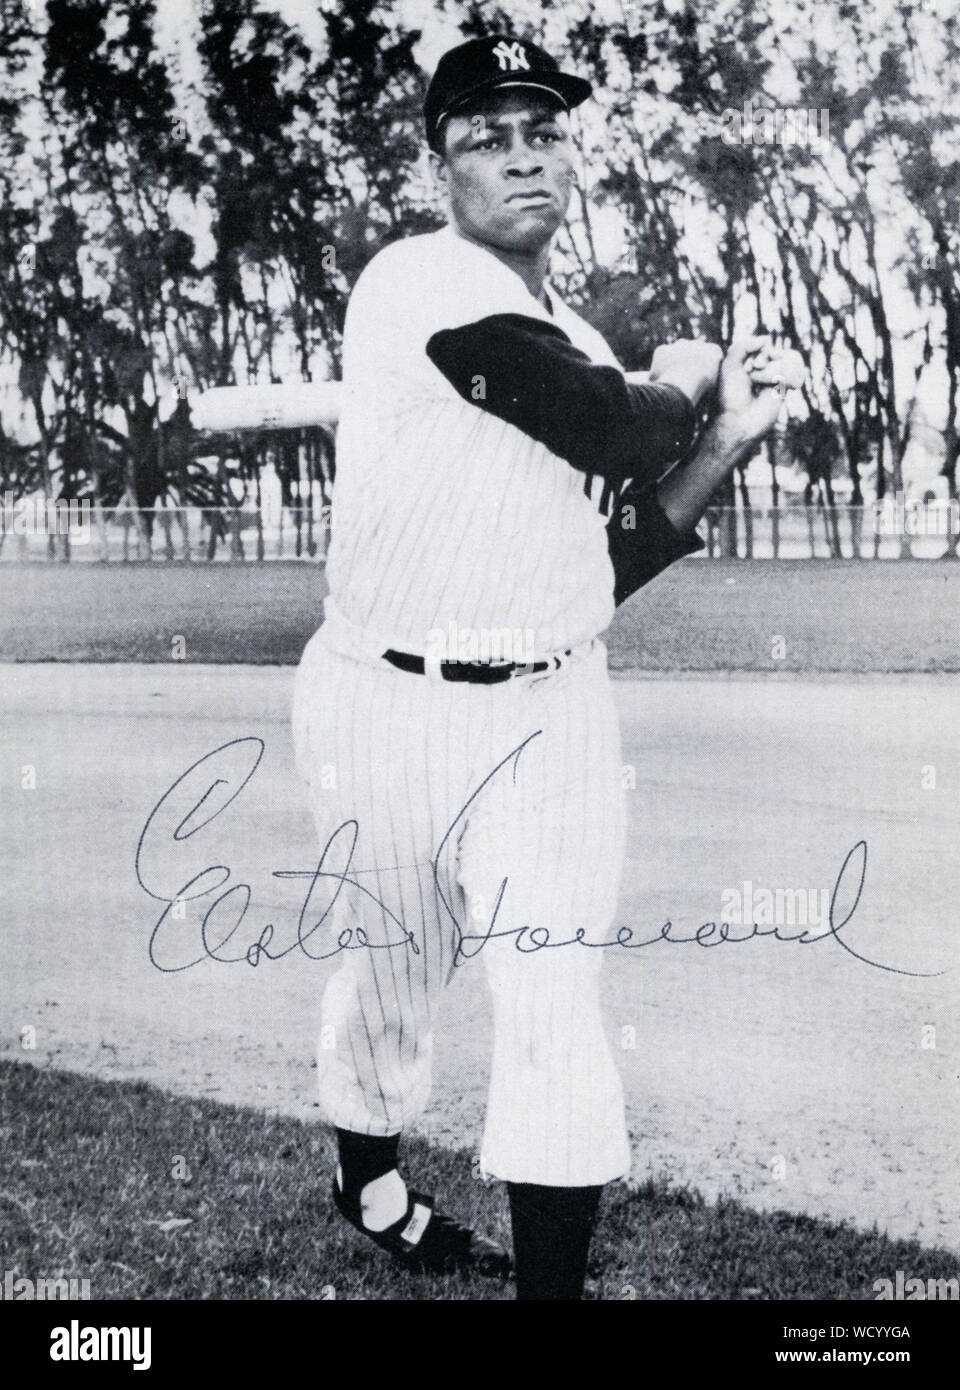 Elston Howard war ein star Baseball spieler mit der New York Yankees in den 1950er und 1960er Jahren. Stockfoto